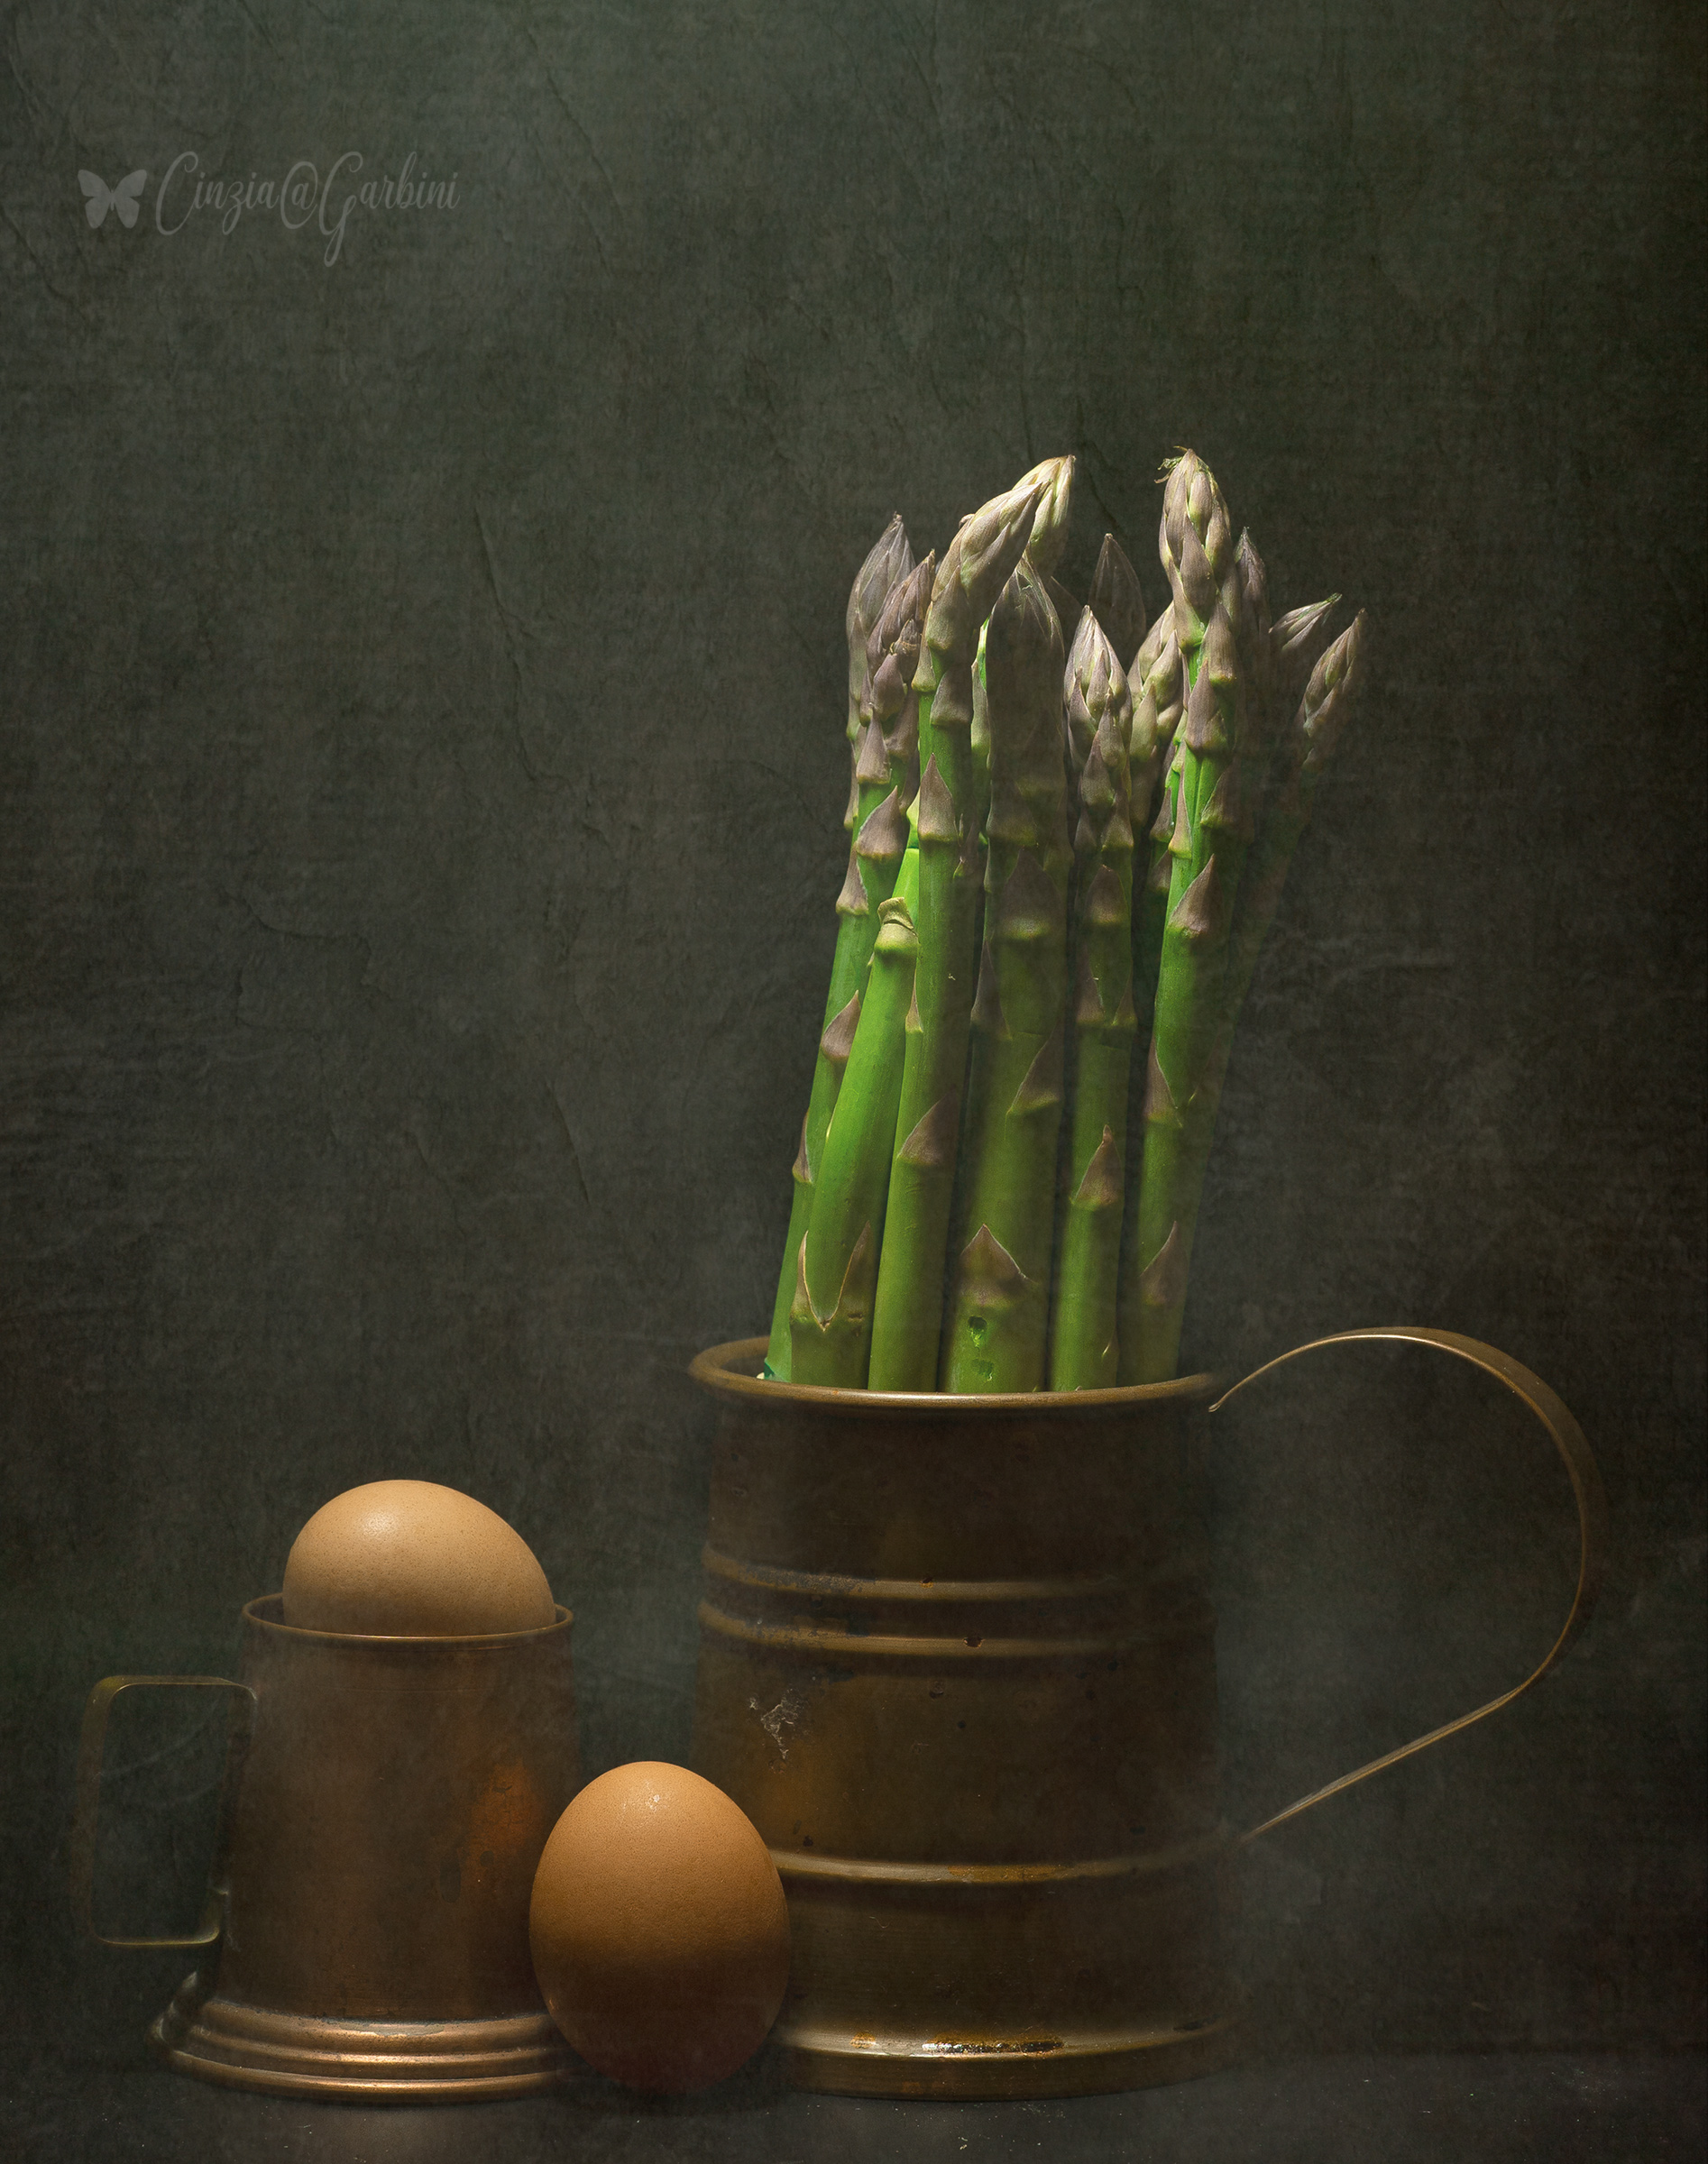 eggs and asparagus...